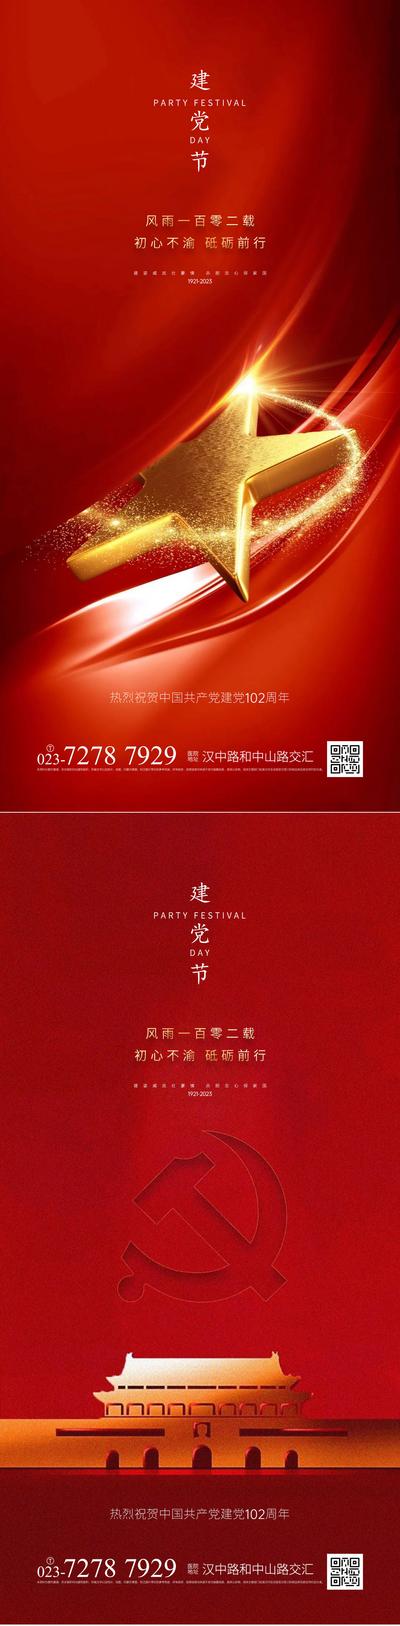 南门网 广告 海报 七一 建党节 节日 系列 品质 五角星